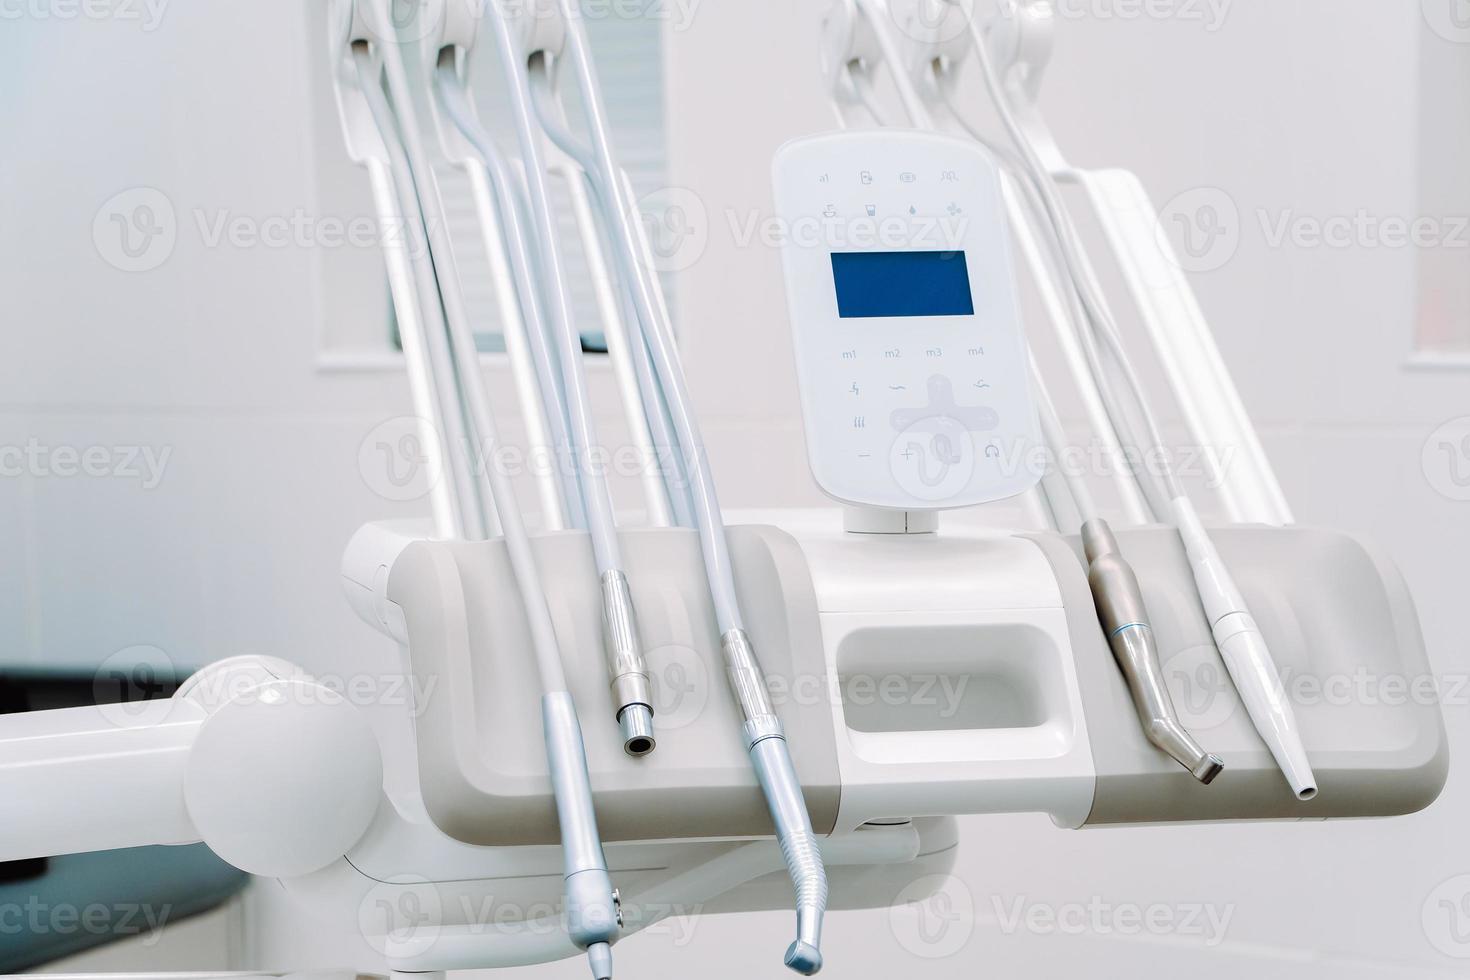 modern dental Utrustning i tandläkare klinik. tandläkare verktyg för behandling och kirurgi av tänder. foto